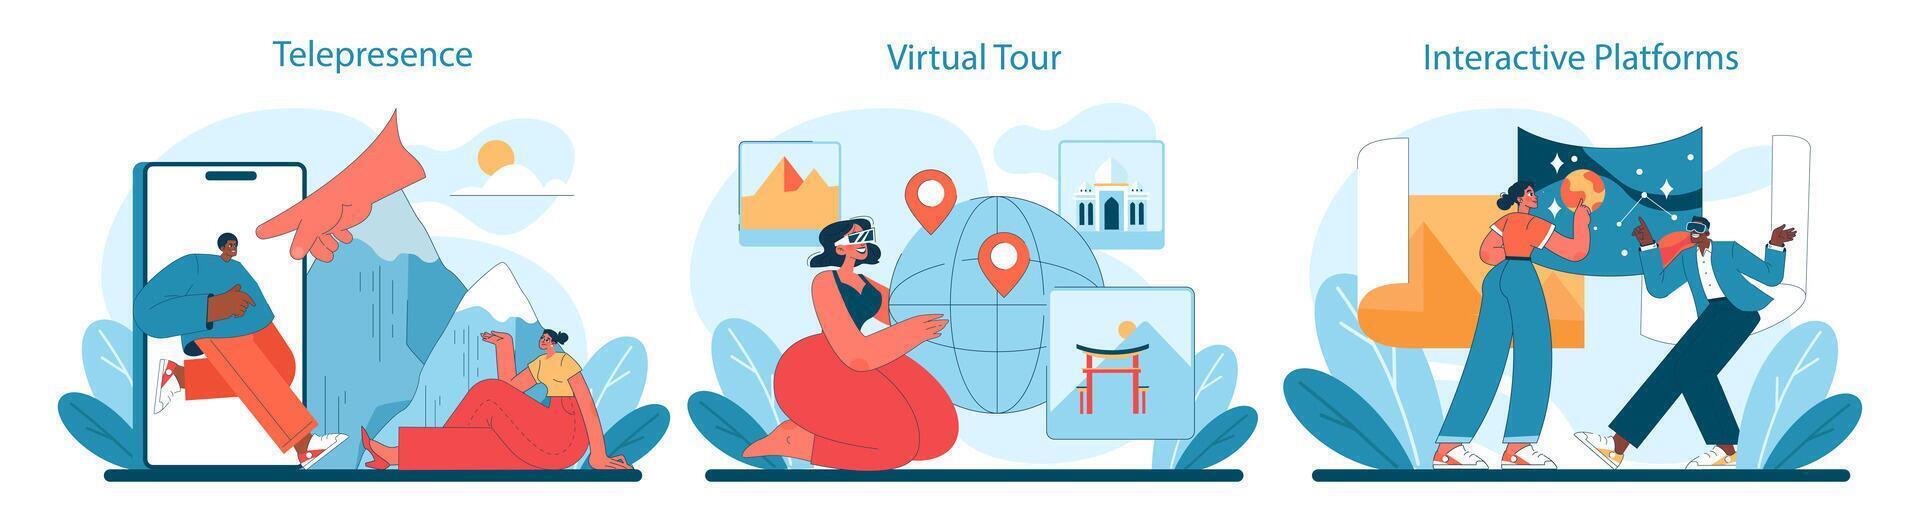 virtuale turismo impostare. senza soluzione di continuità telepresenza, coinvolgente virtuale tour vettore